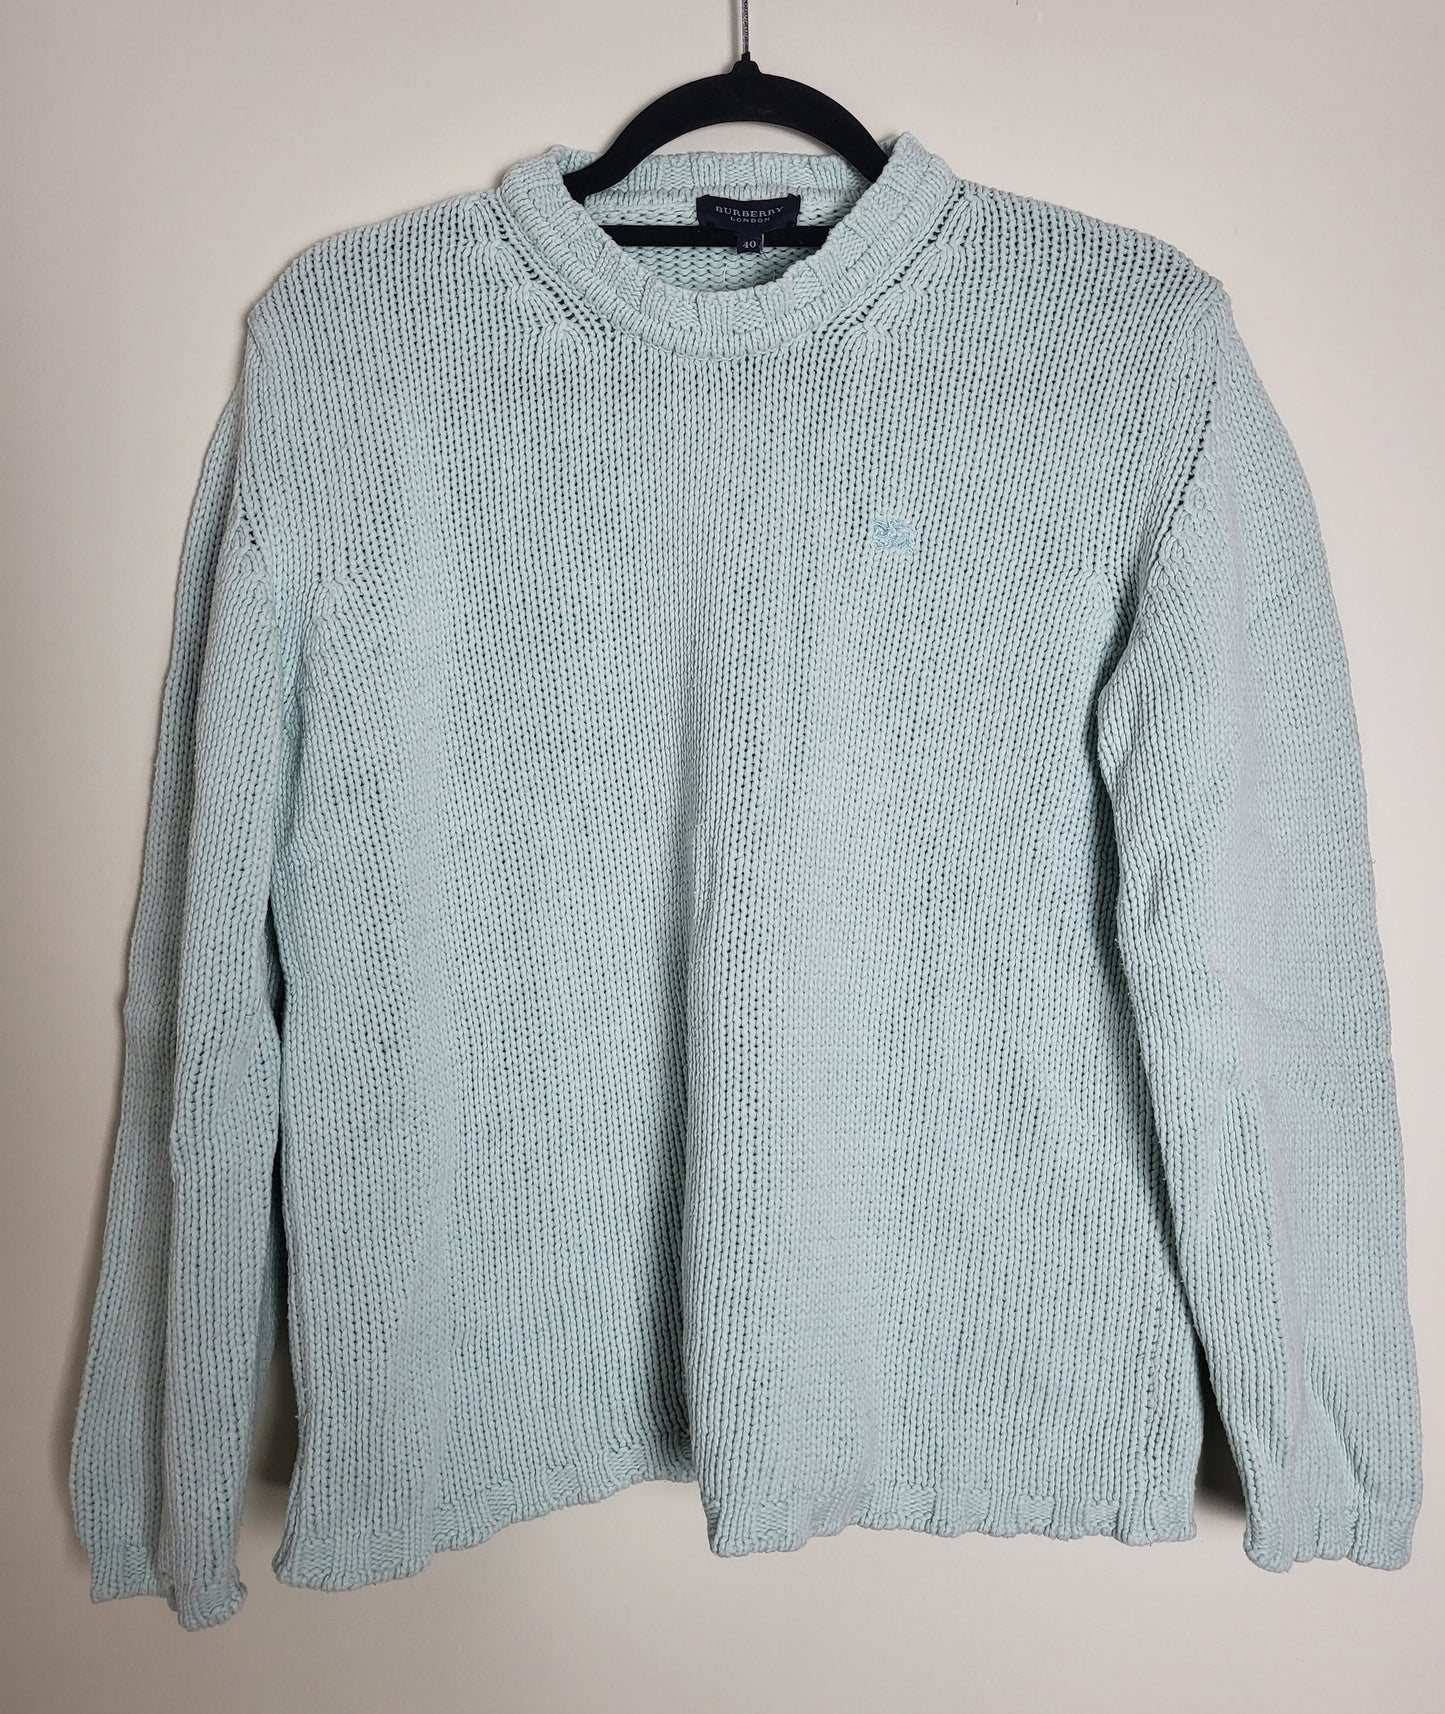 BURBERRY - Vintage Pullover - Klassisch mit Logo - Hellblau - Damen - M/L